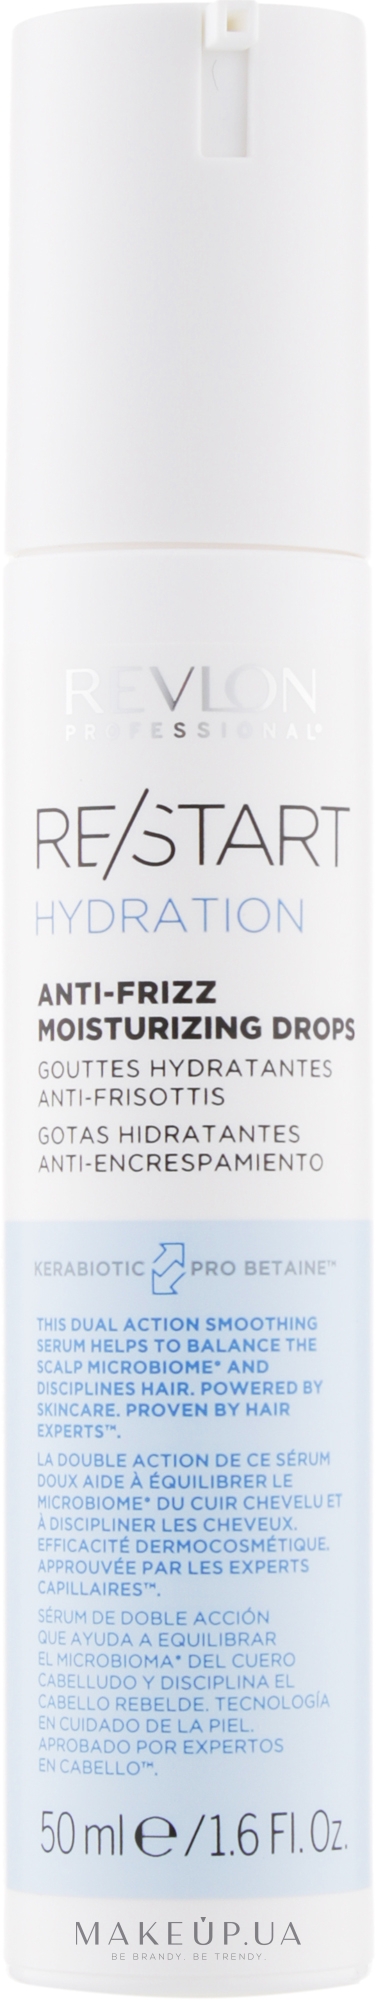 за зволоження Professional Сироватка Restart волосся в Revlon найкращою - для Hydration Drops: Anti-frizz купити Moisturizing ціною Україні